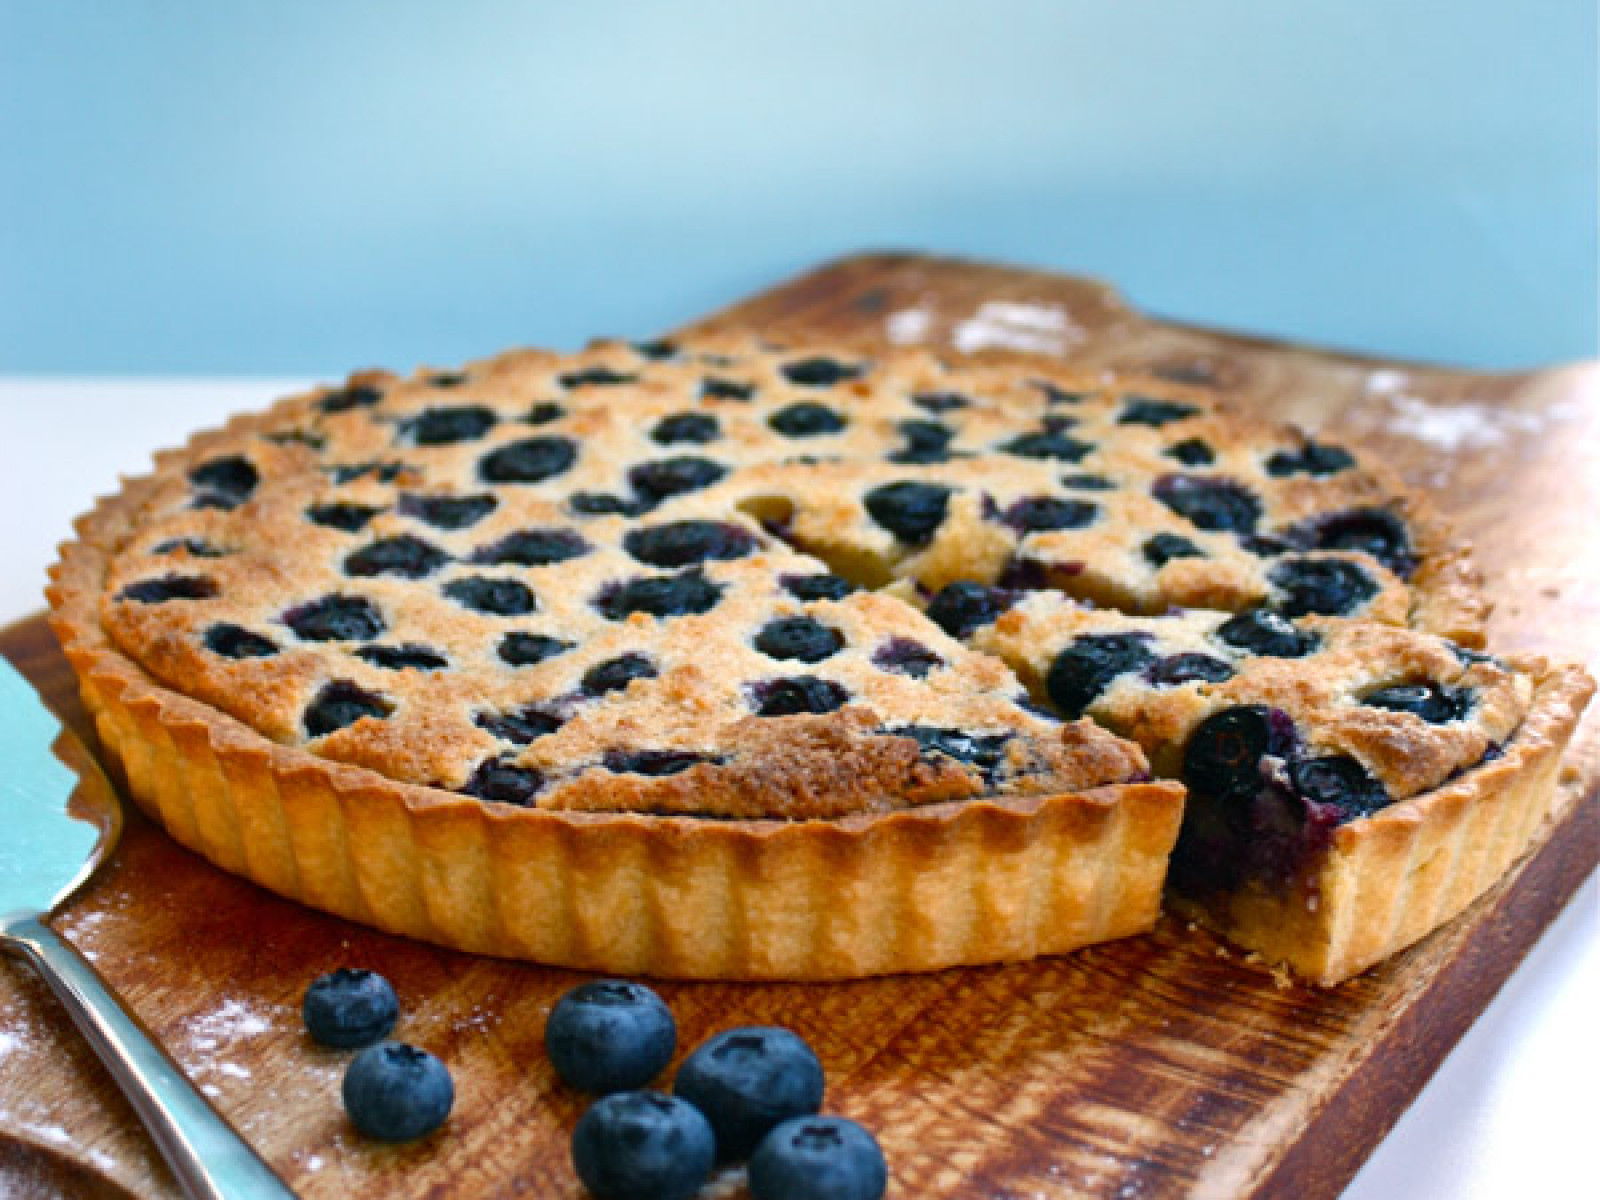 Lemon & Blueberry Frangipane Tart - Geoff's Baking Blog